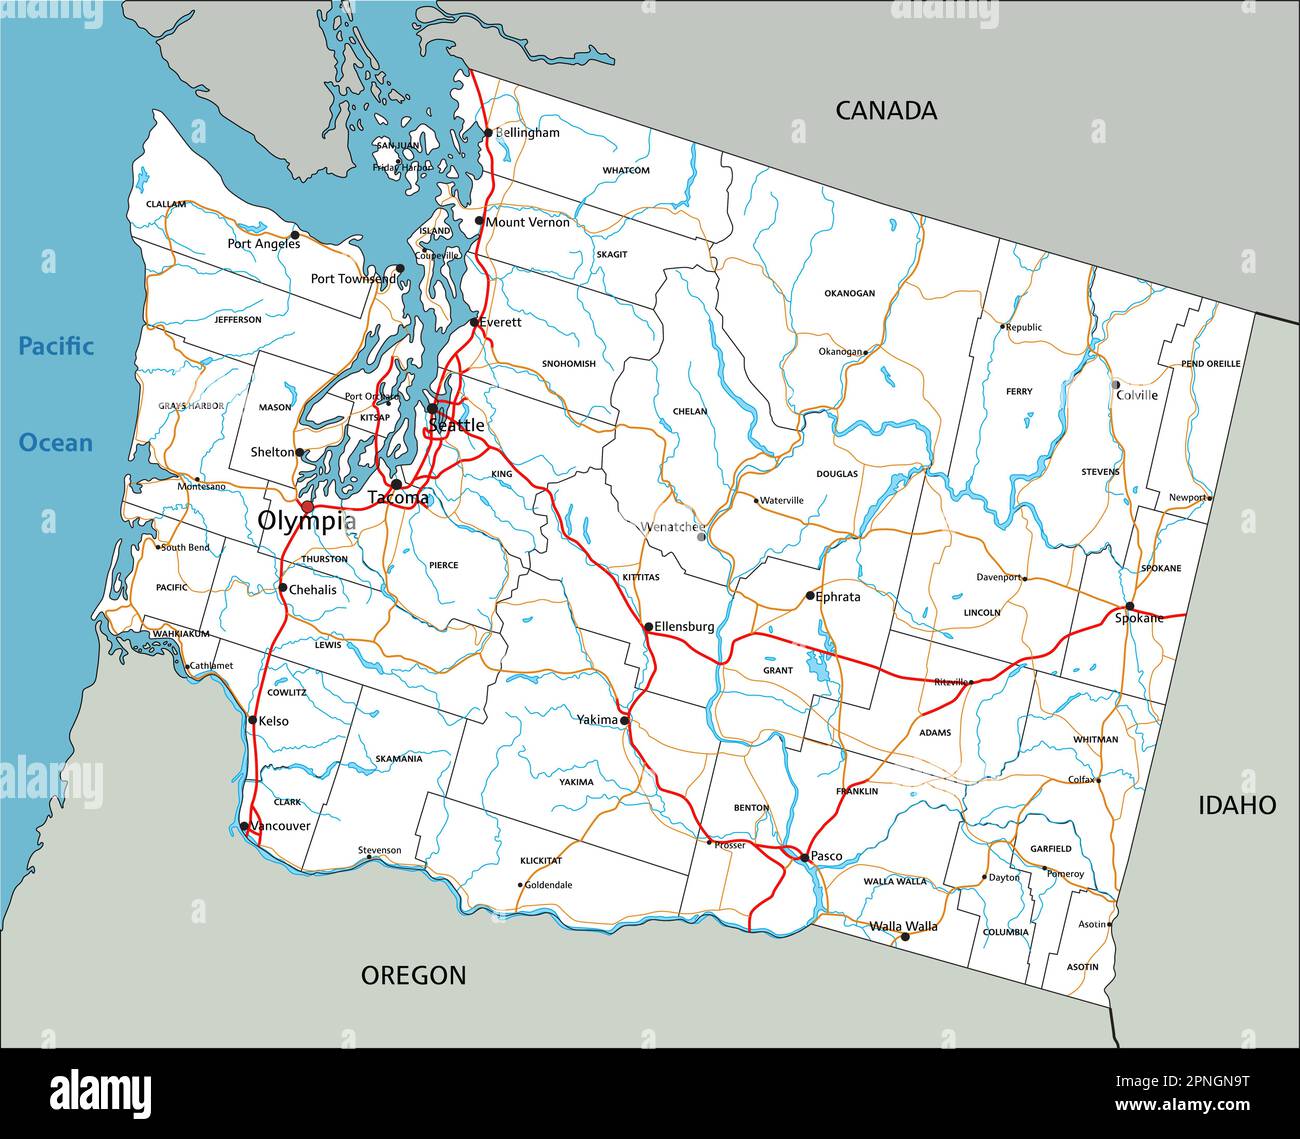 Detaillierte Straßenkarte von Washington mit Kennzeichnung. Stock Vektor